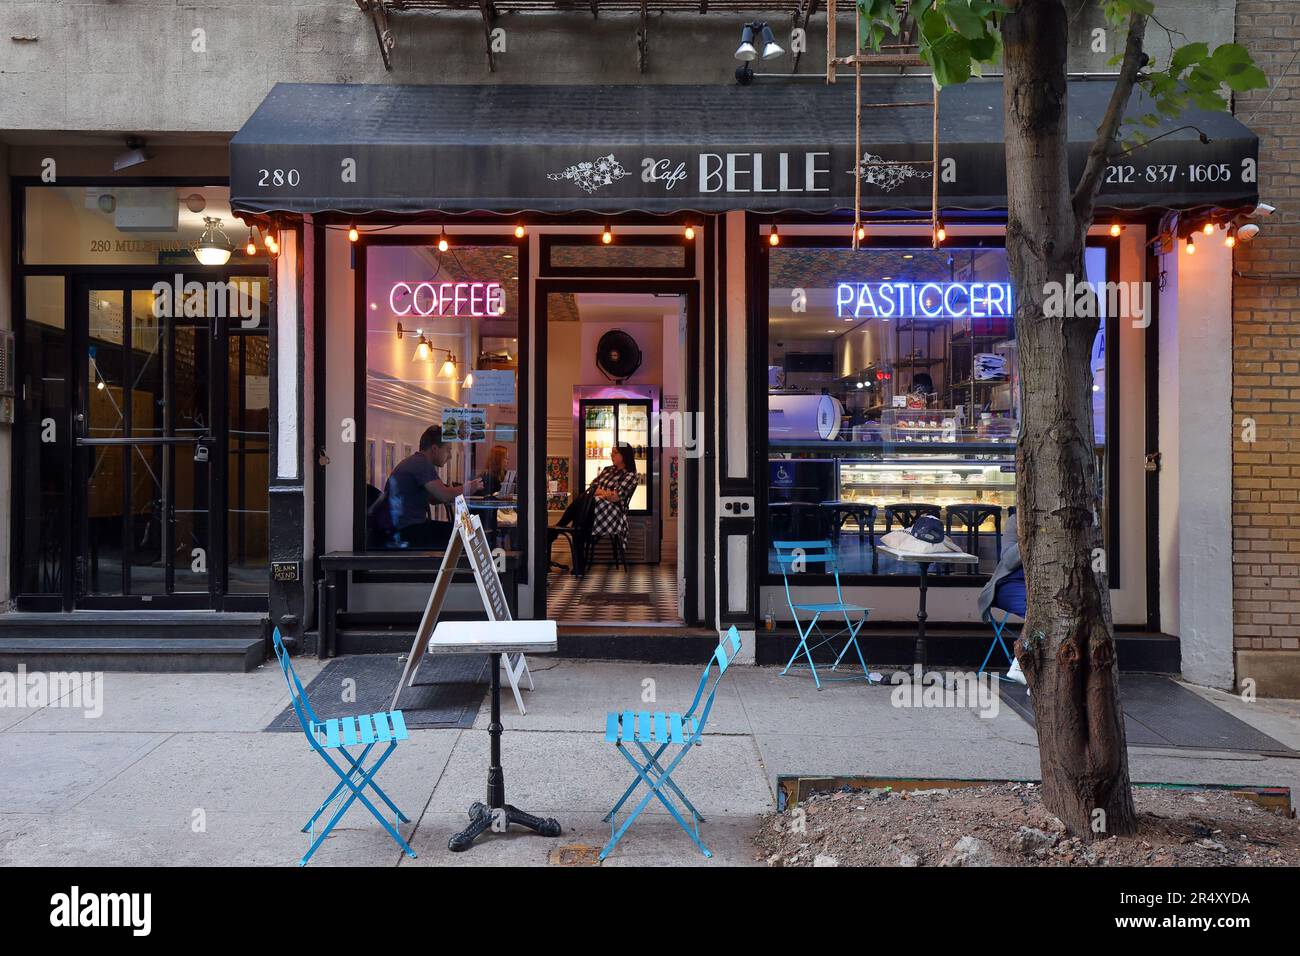 Café Belle, 280 Mulberry St, New York, New York, New York photo d'un café de pâtisserie italien dans le quartier Little Italy/Nolita de Manhattan. Banque D'Images